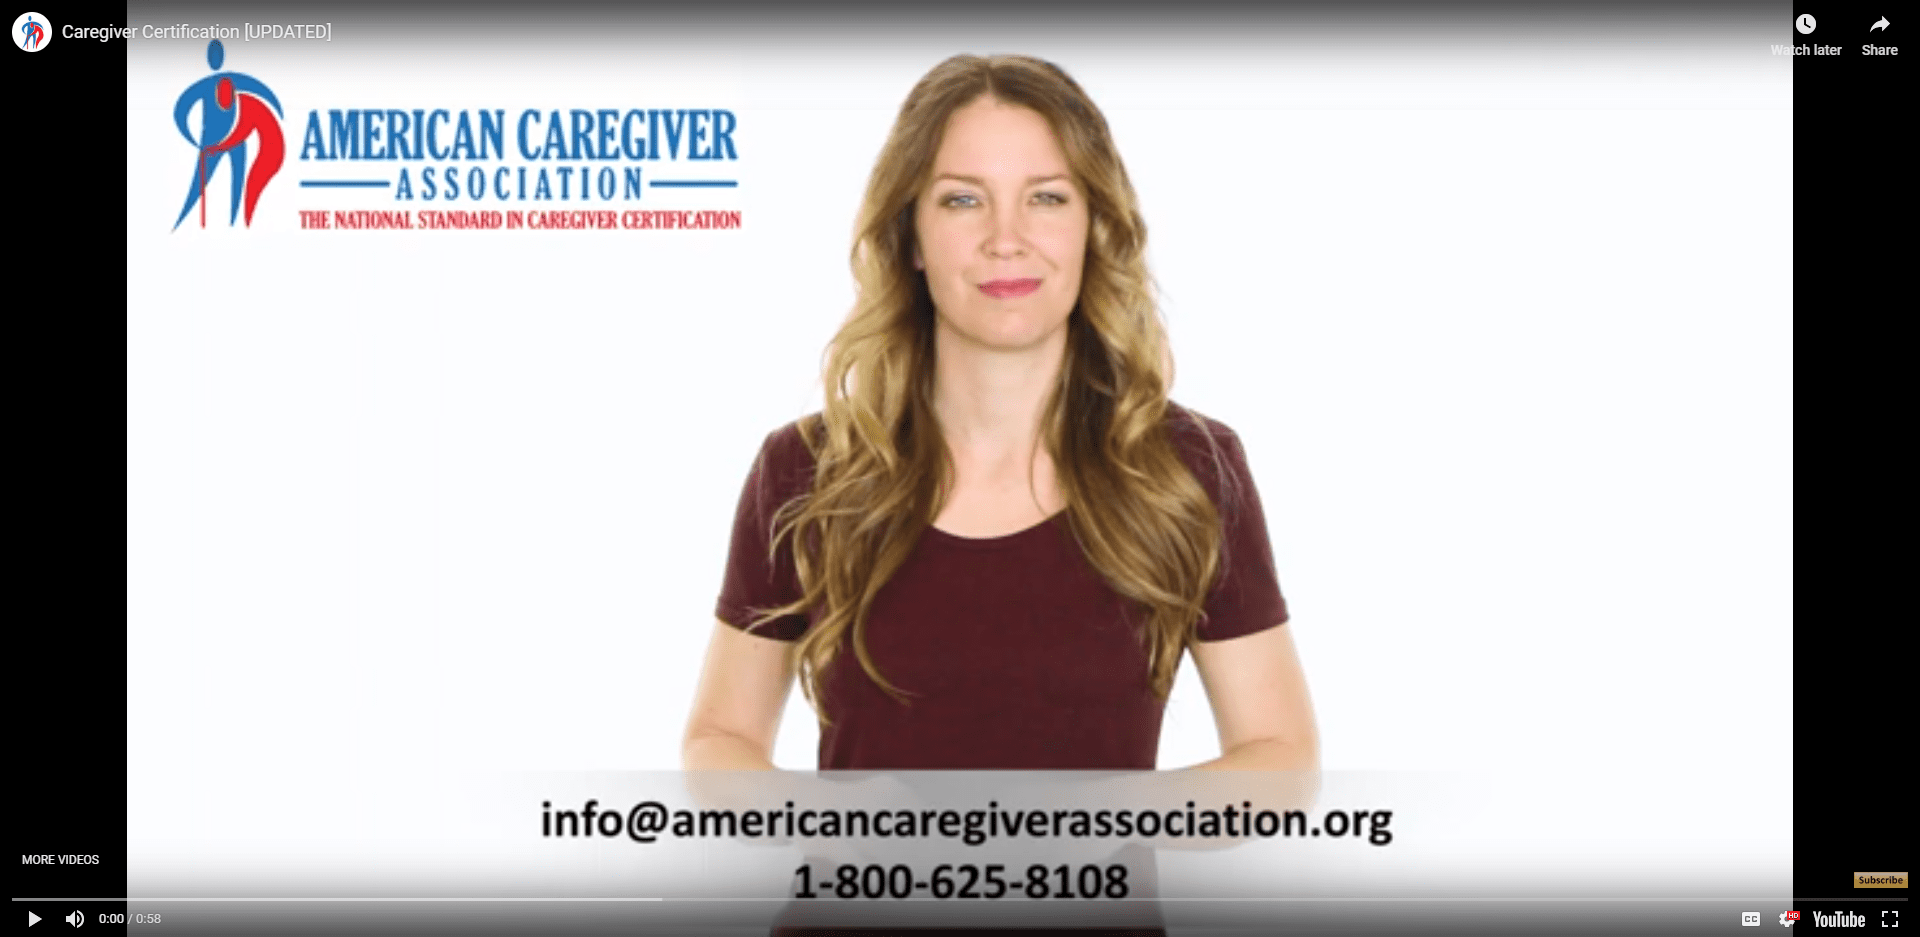 American Caregiver Association: How to Become a Caregiver